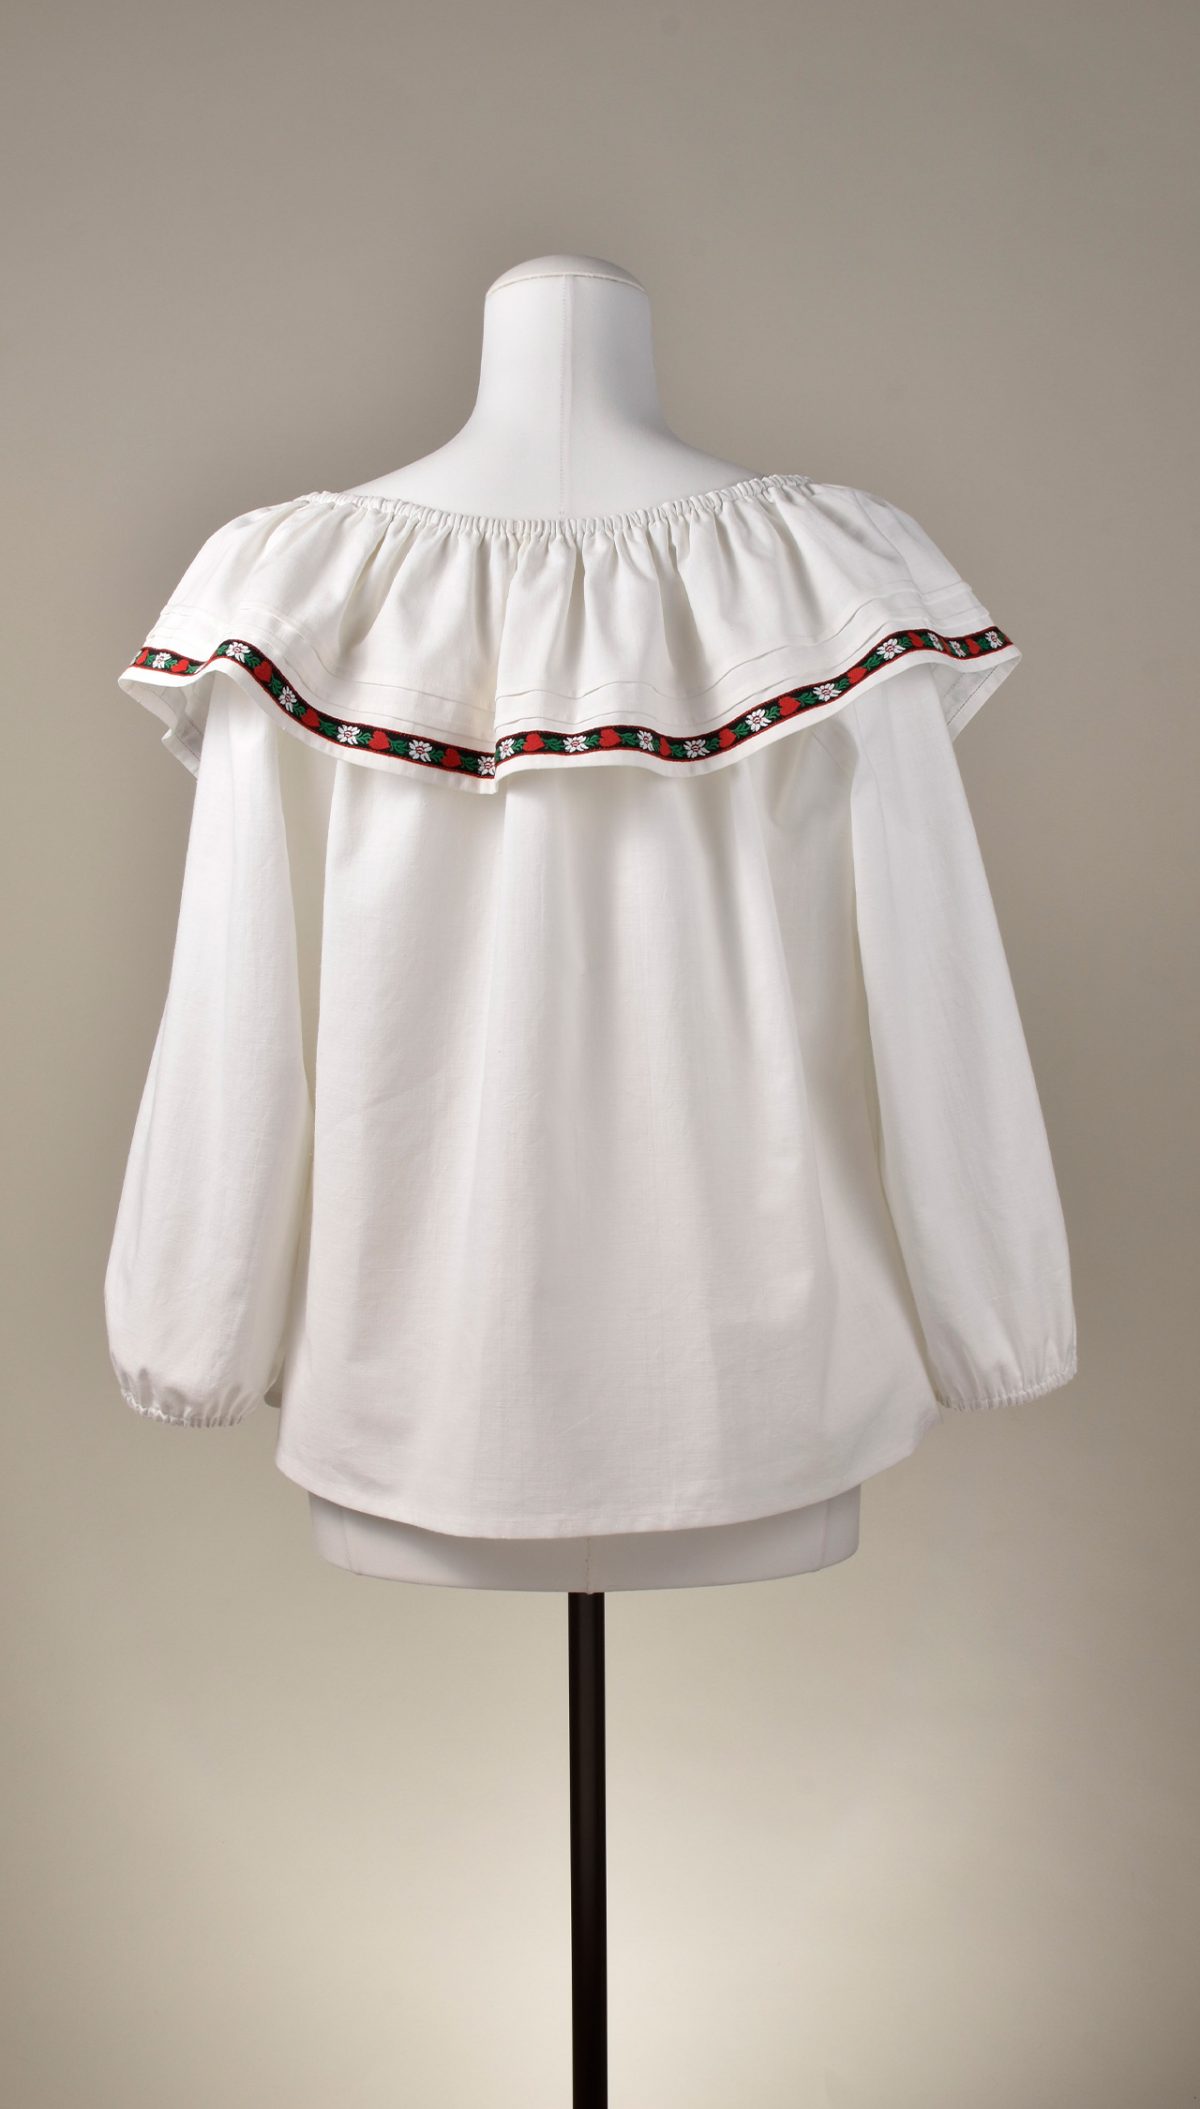 Bluse "Tradition" von KleiderLuxus